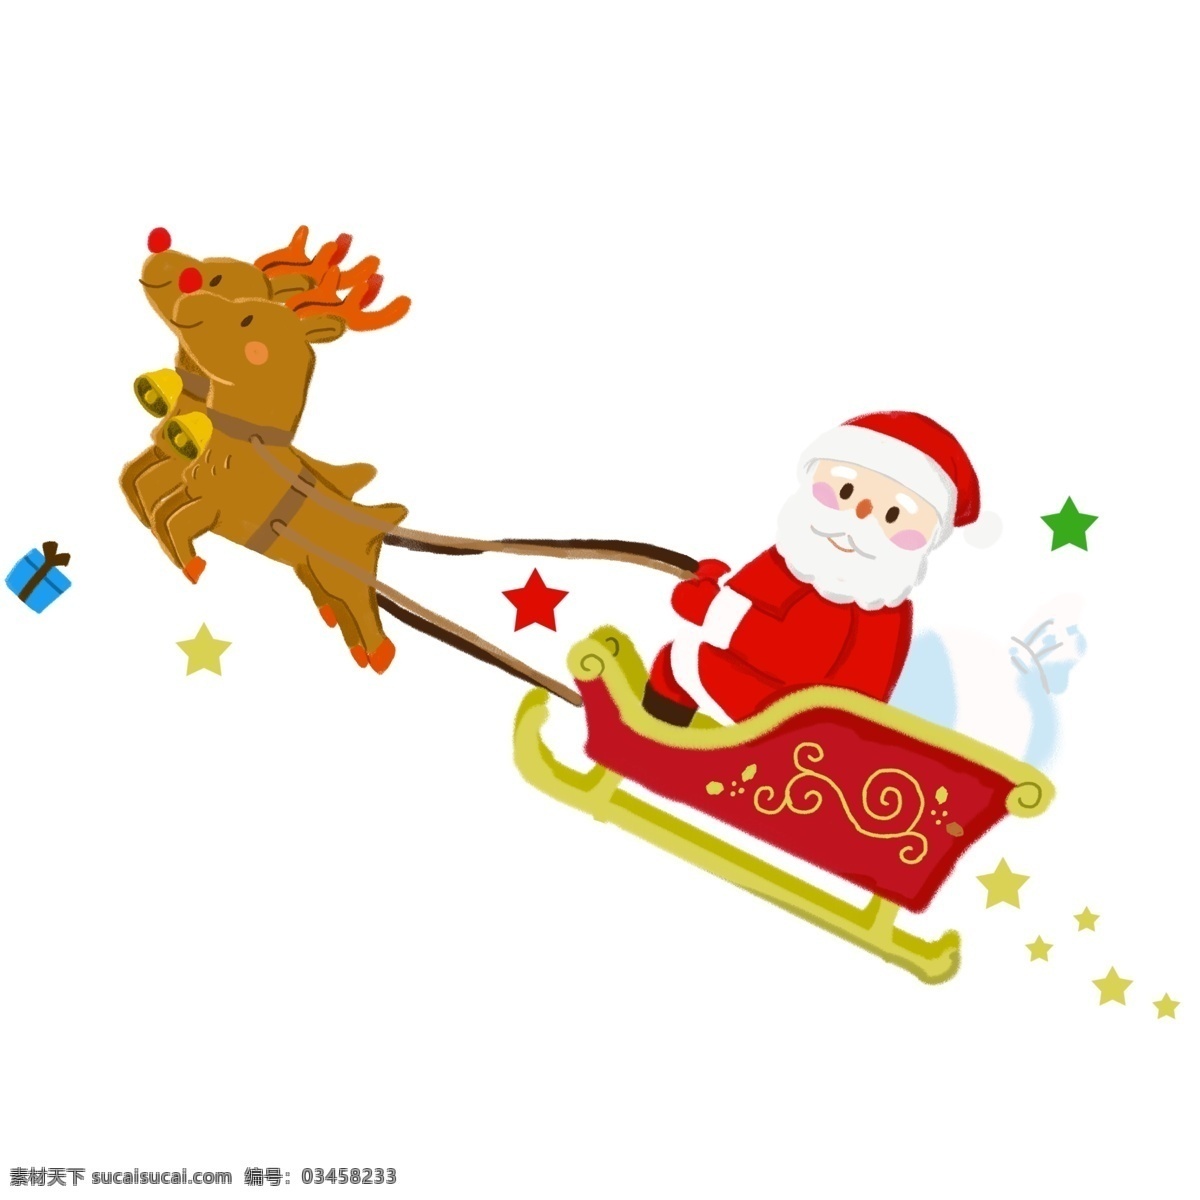 圣诞节 送礼 物 圣诞老人 卡通 手绘 圣诞 圣诞帽 戴 帽 麋鹿 铃铛 礼物 背礼物的老人 欢乐 可爱 雪橇 海报配图